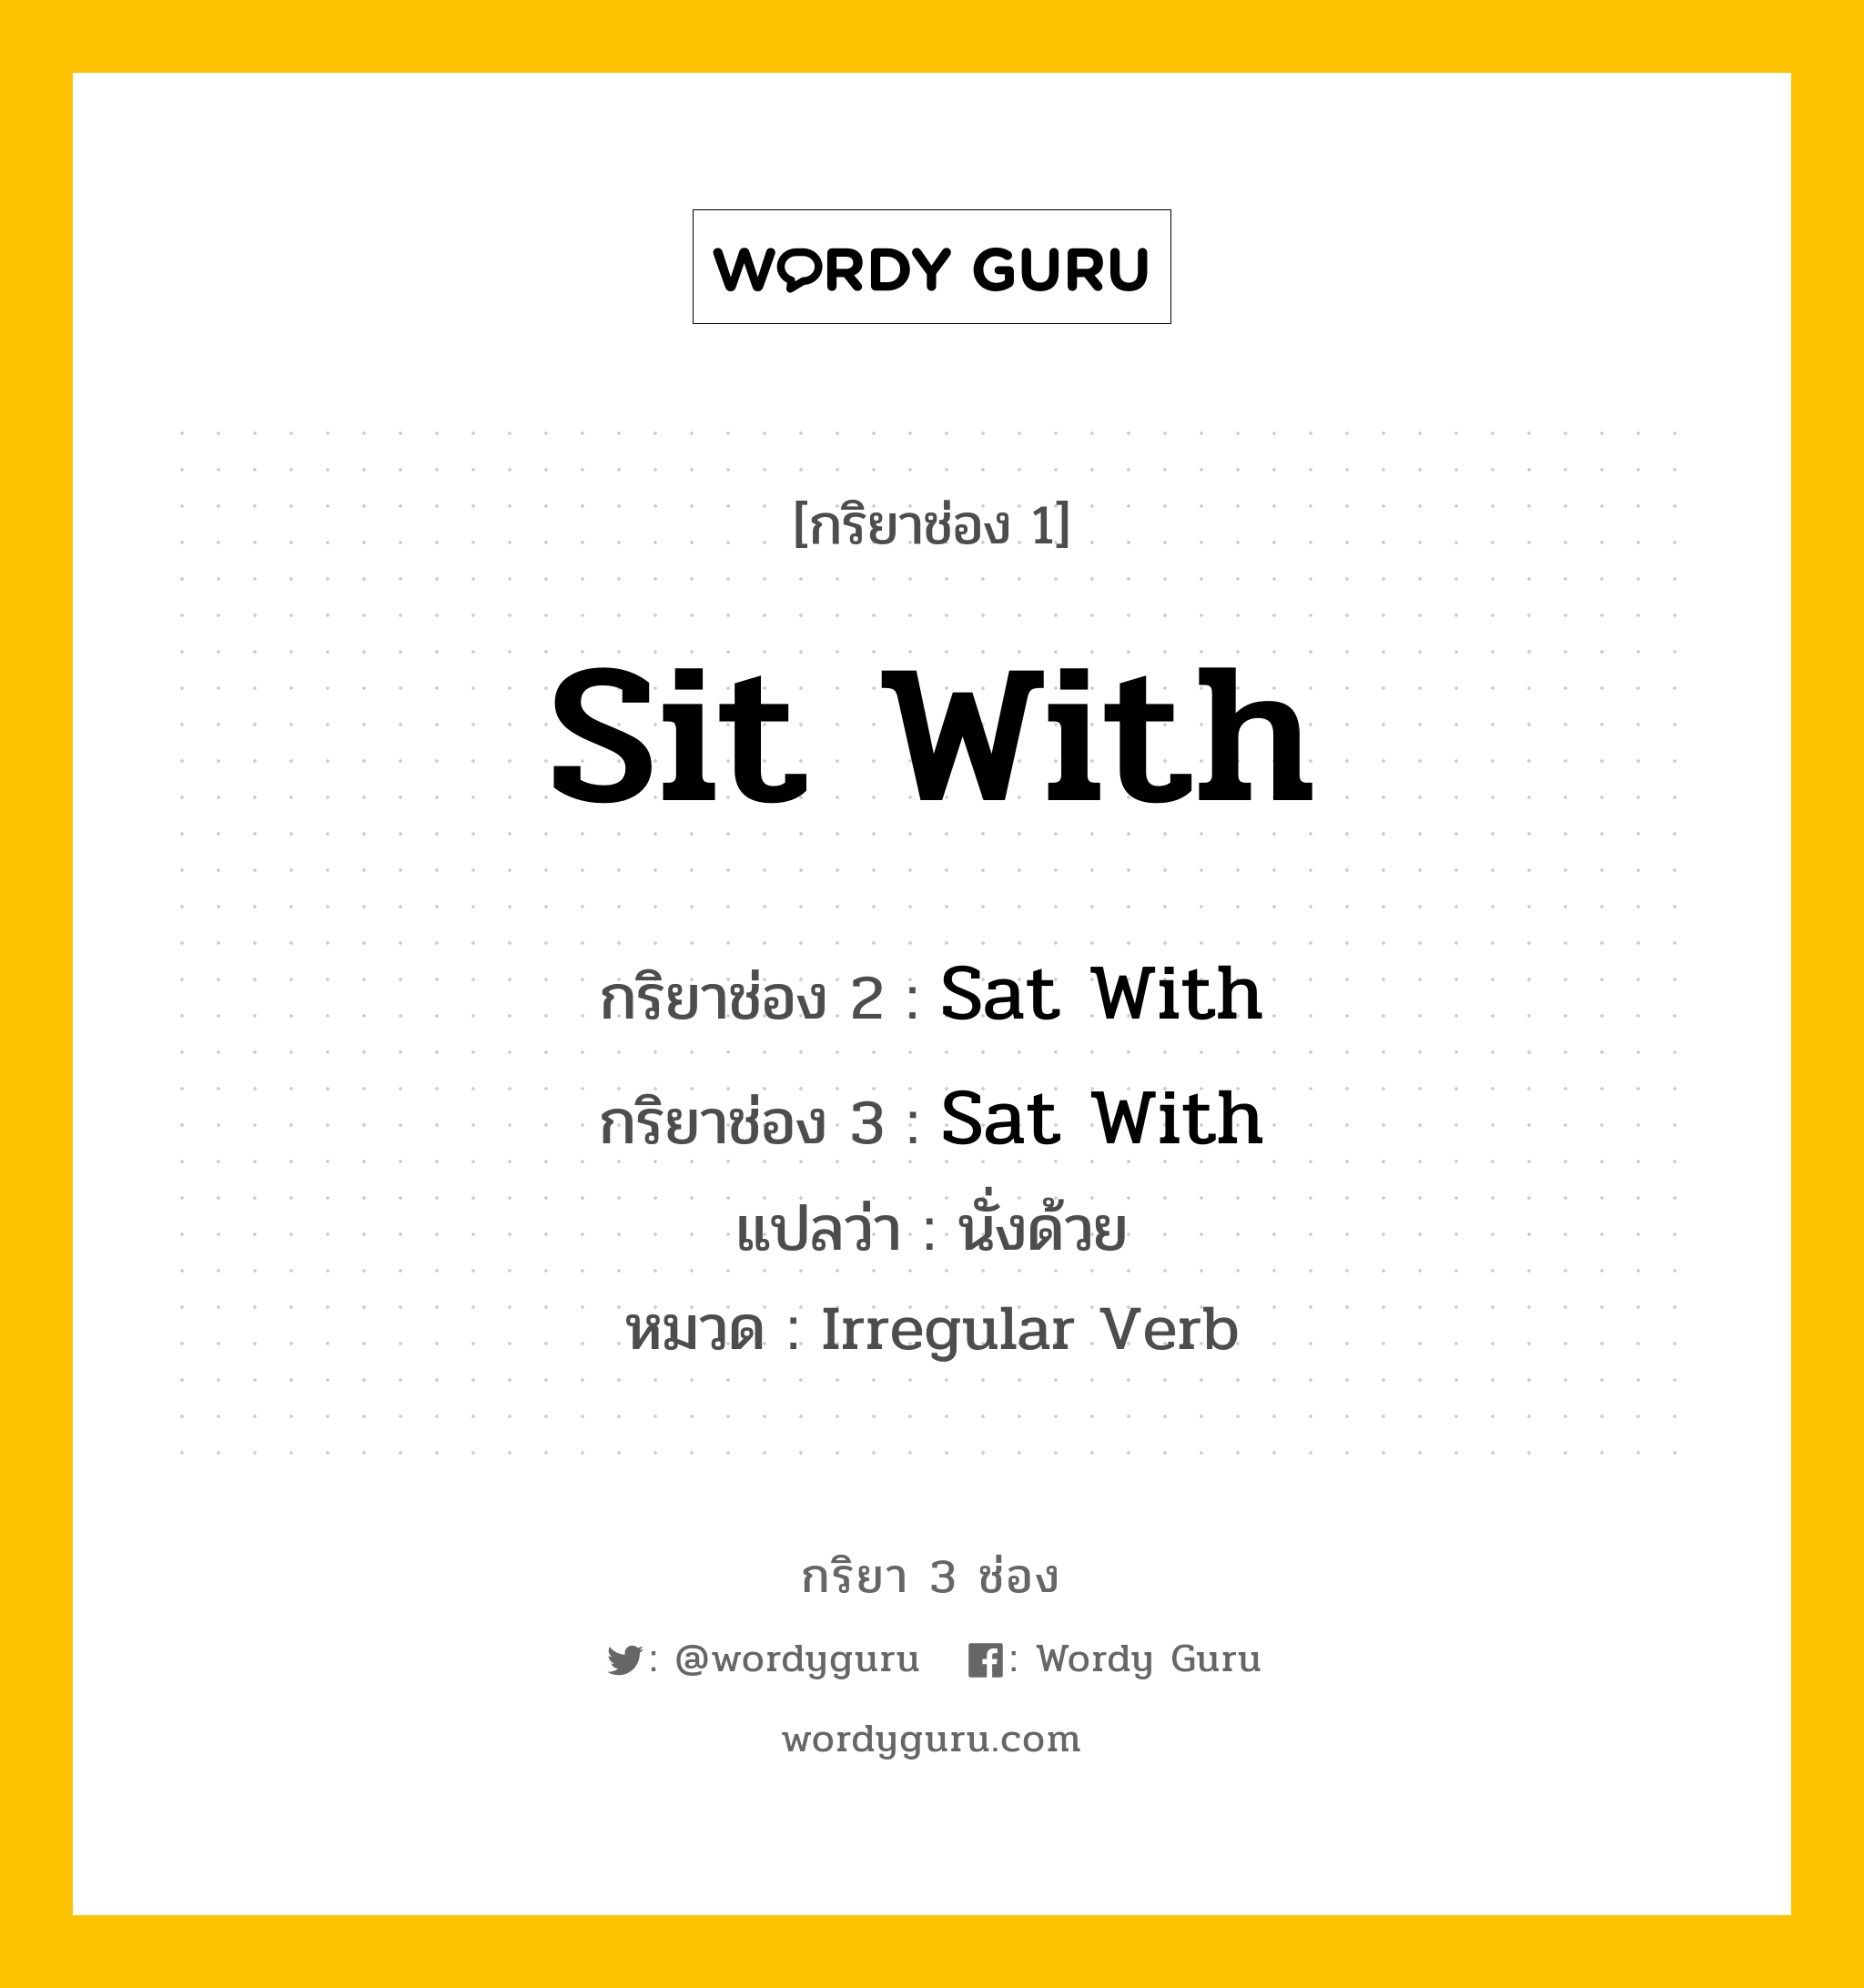 กริยา 3 ช่อง ของ Sit With คืออะไร?, กริยาช่อง 1 Sit With กริยาช่อง 2 Sat With กริยาช่อง 3 Sat With แปลว่า นั่งด้วย หมวด Irregular Verb หมวด Irregular Verb